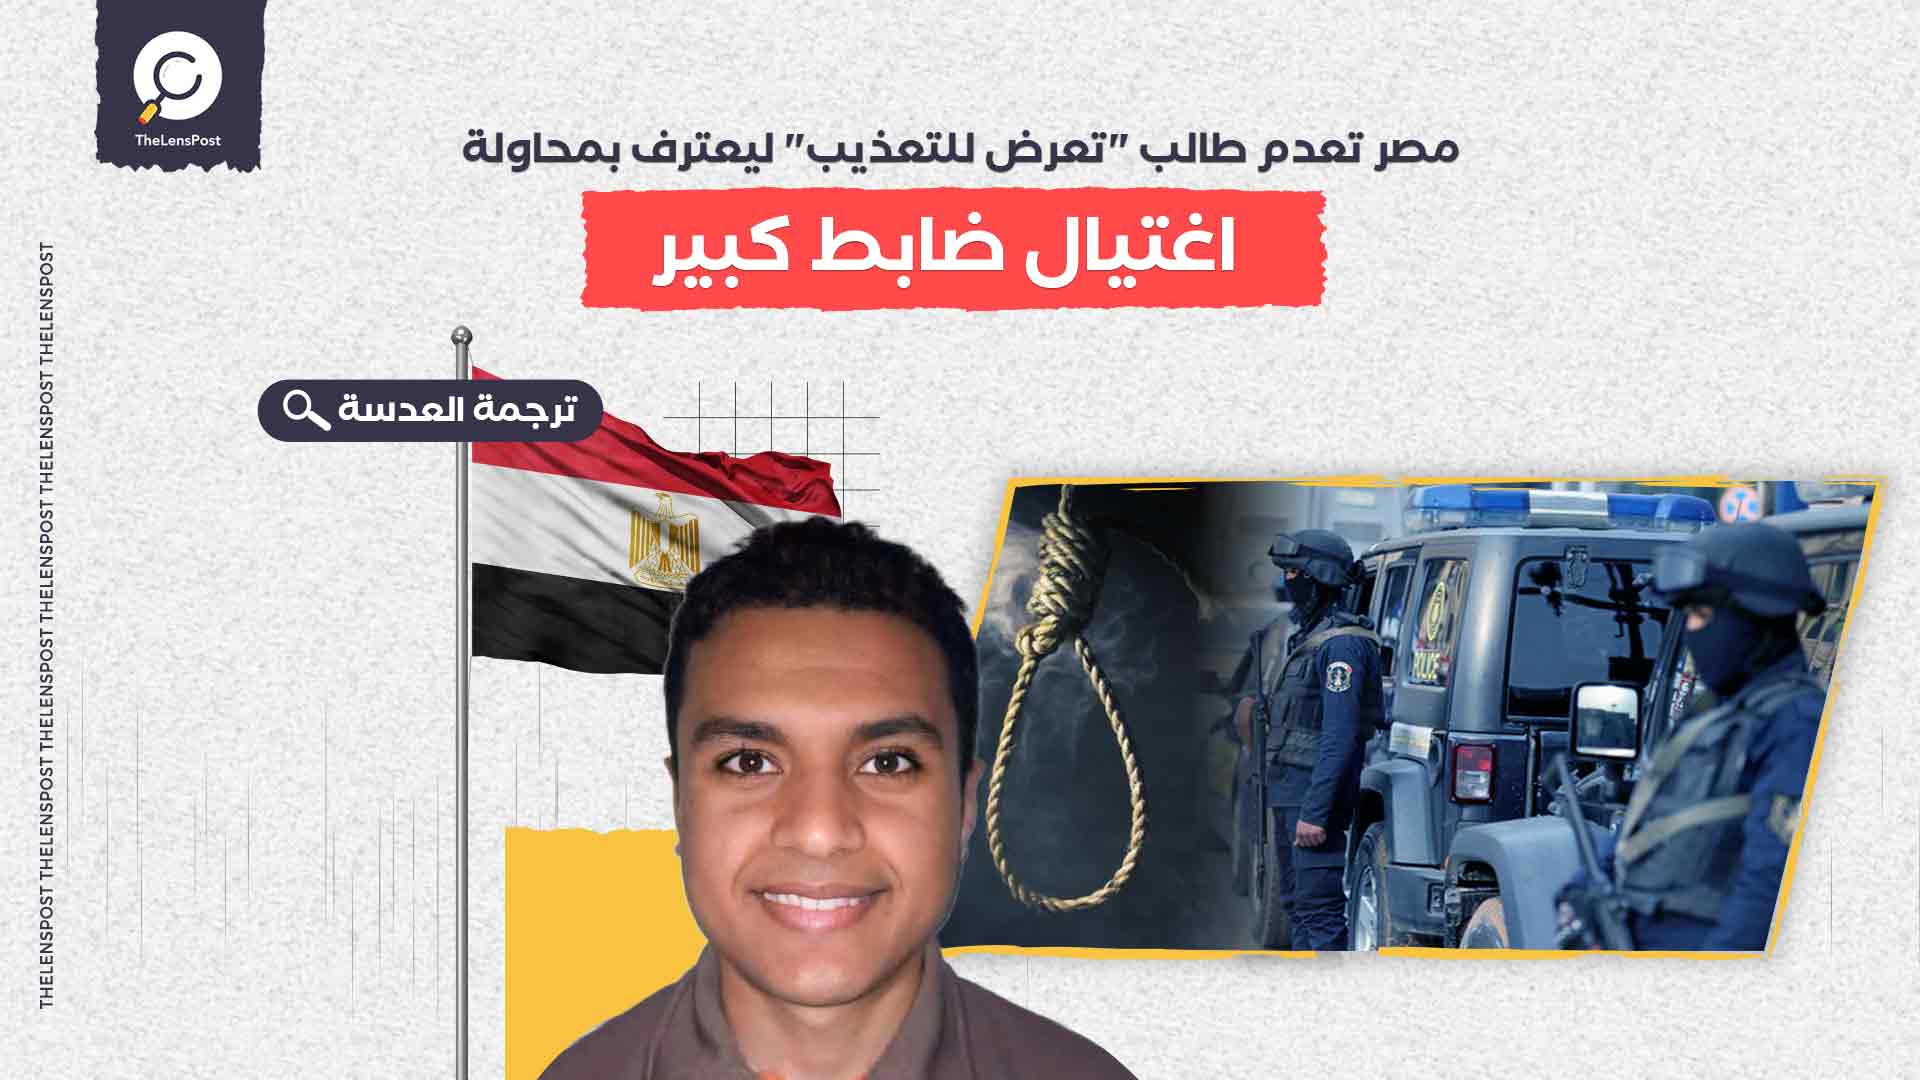 مصر تعدم طالب "تعرض للتعذيب" ليعترف بمحاولة اغتيال ضابط كبير